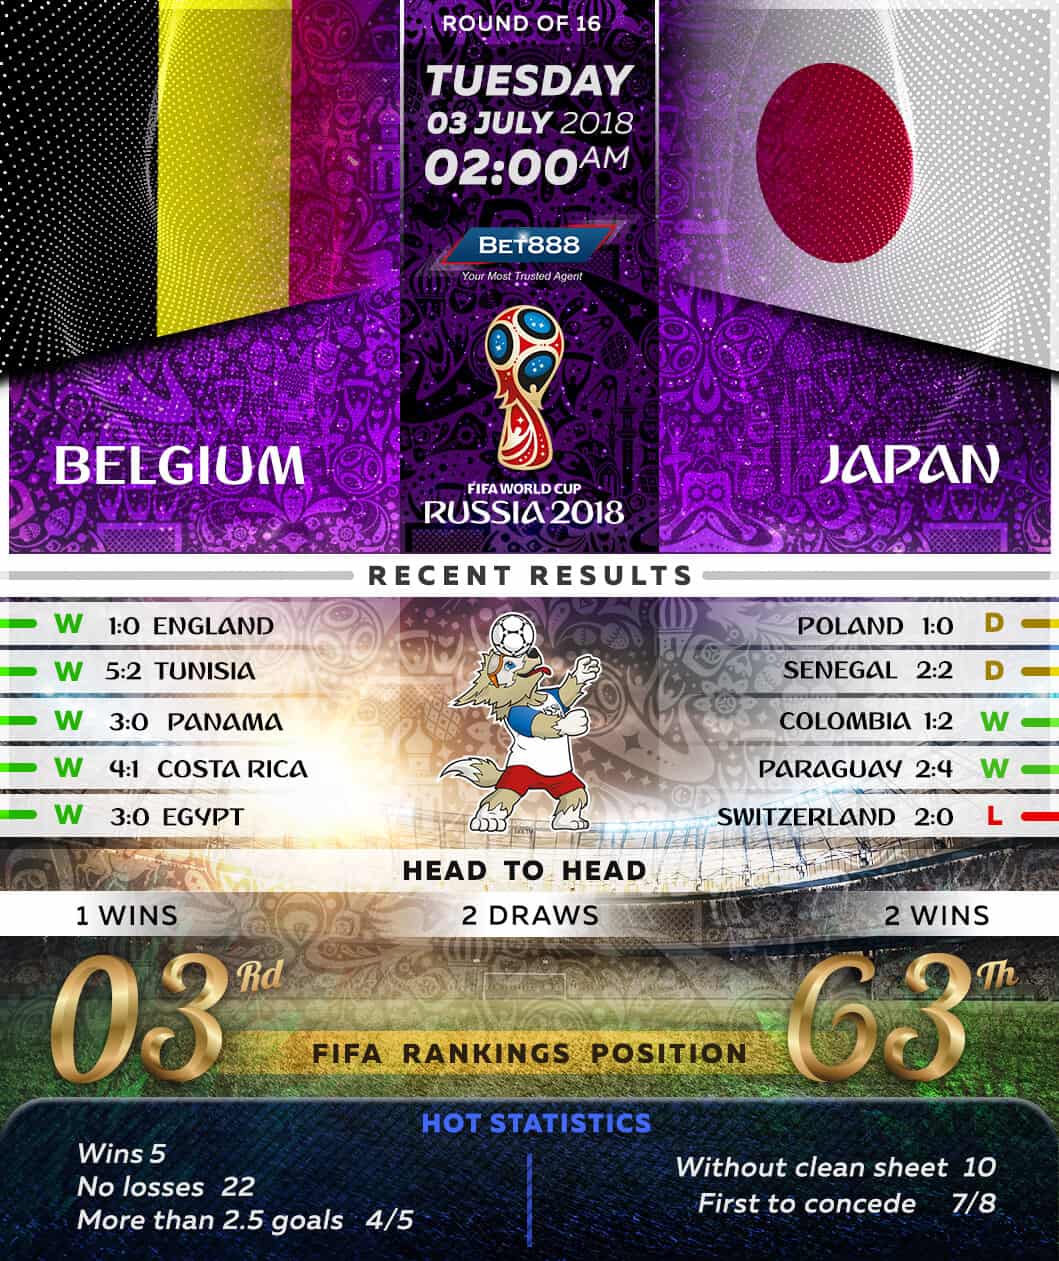 Belgium vs Japan 03/07/18